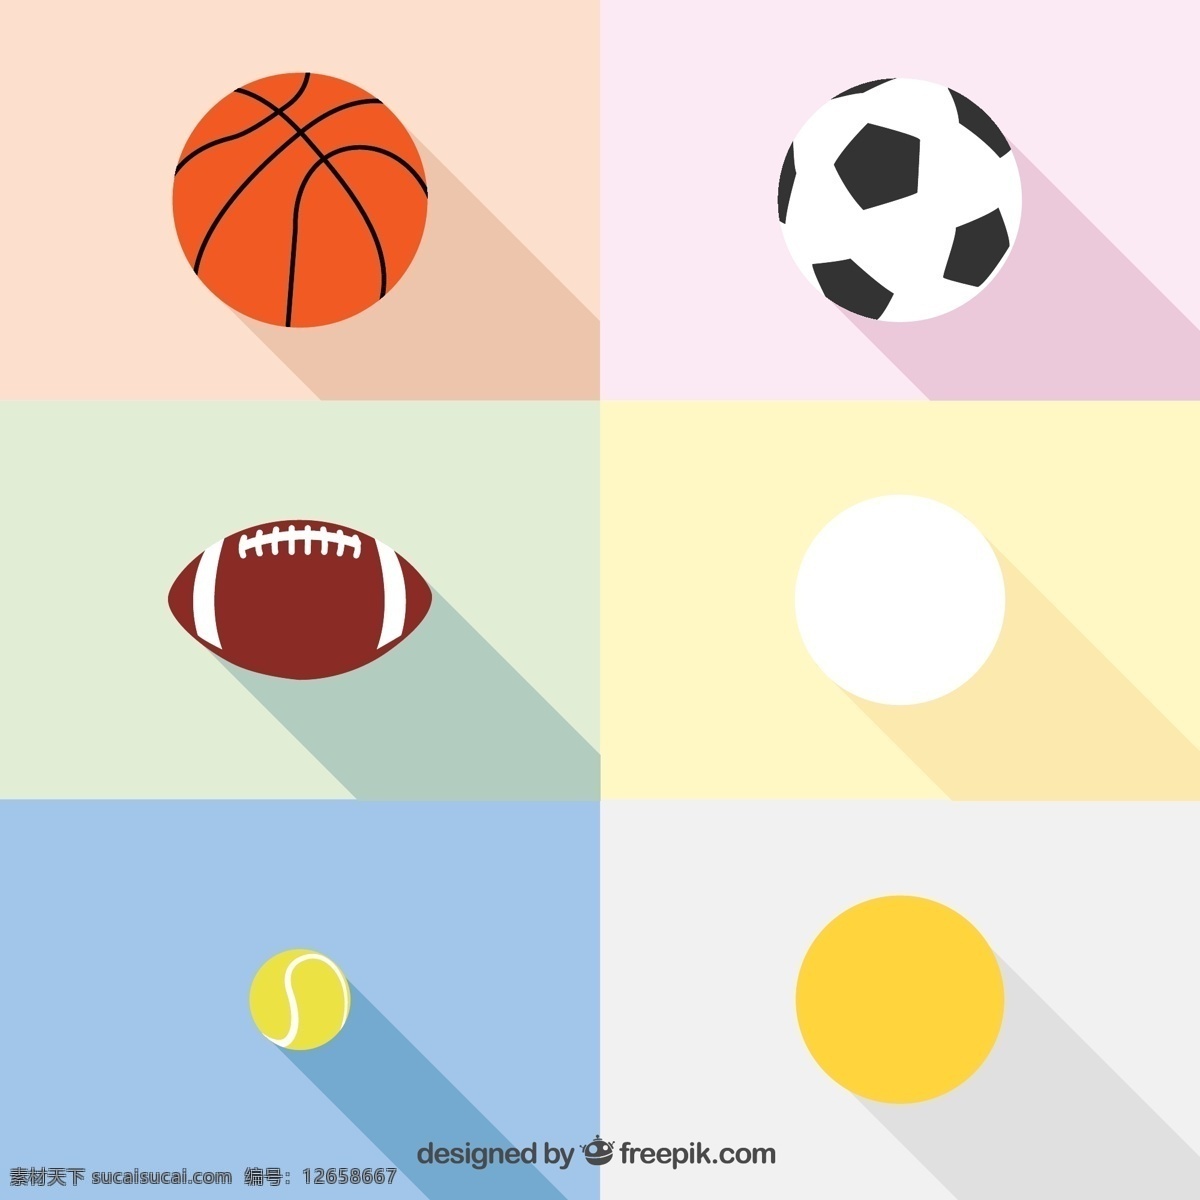 球类图标 球类ai 球类矢量 源文件 足球 篮球 排球 羽毛球 棒球 高尔夫 体育 运动 运动矢量图 文化艺术 体育运动 平面素材 白色